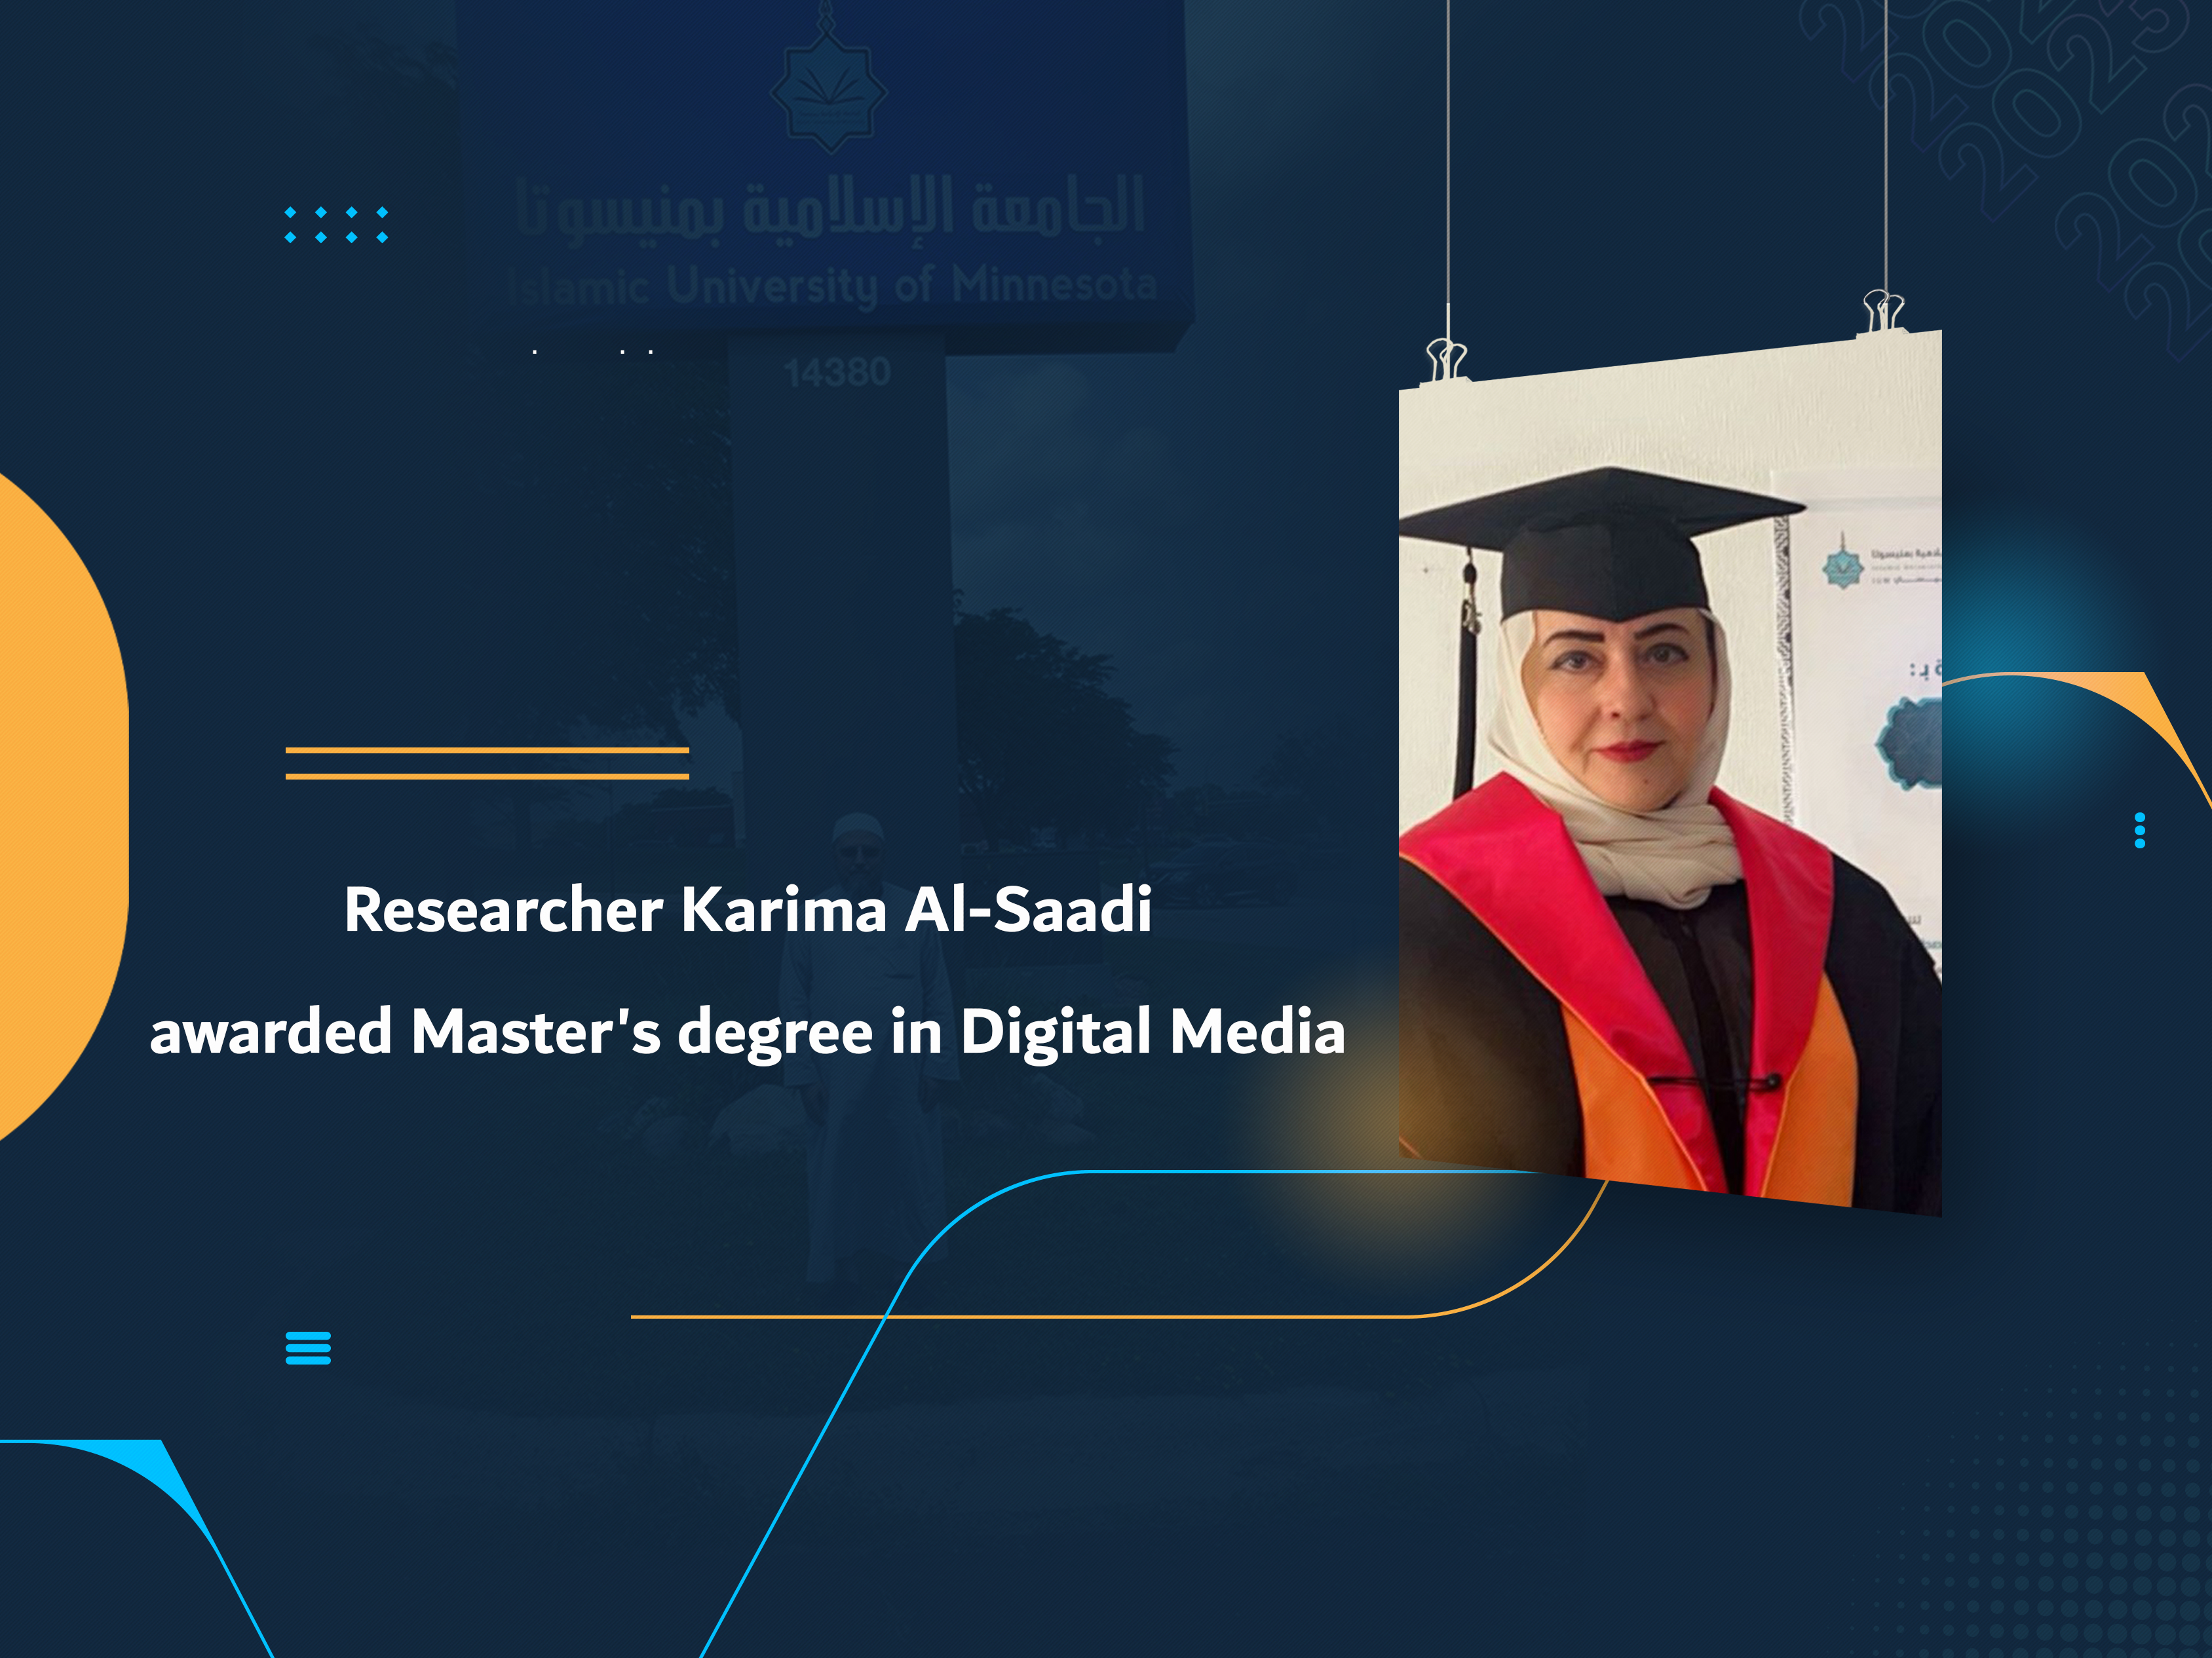 Researcher Karima Al-Saadi awarded Master's degree in Digital Media